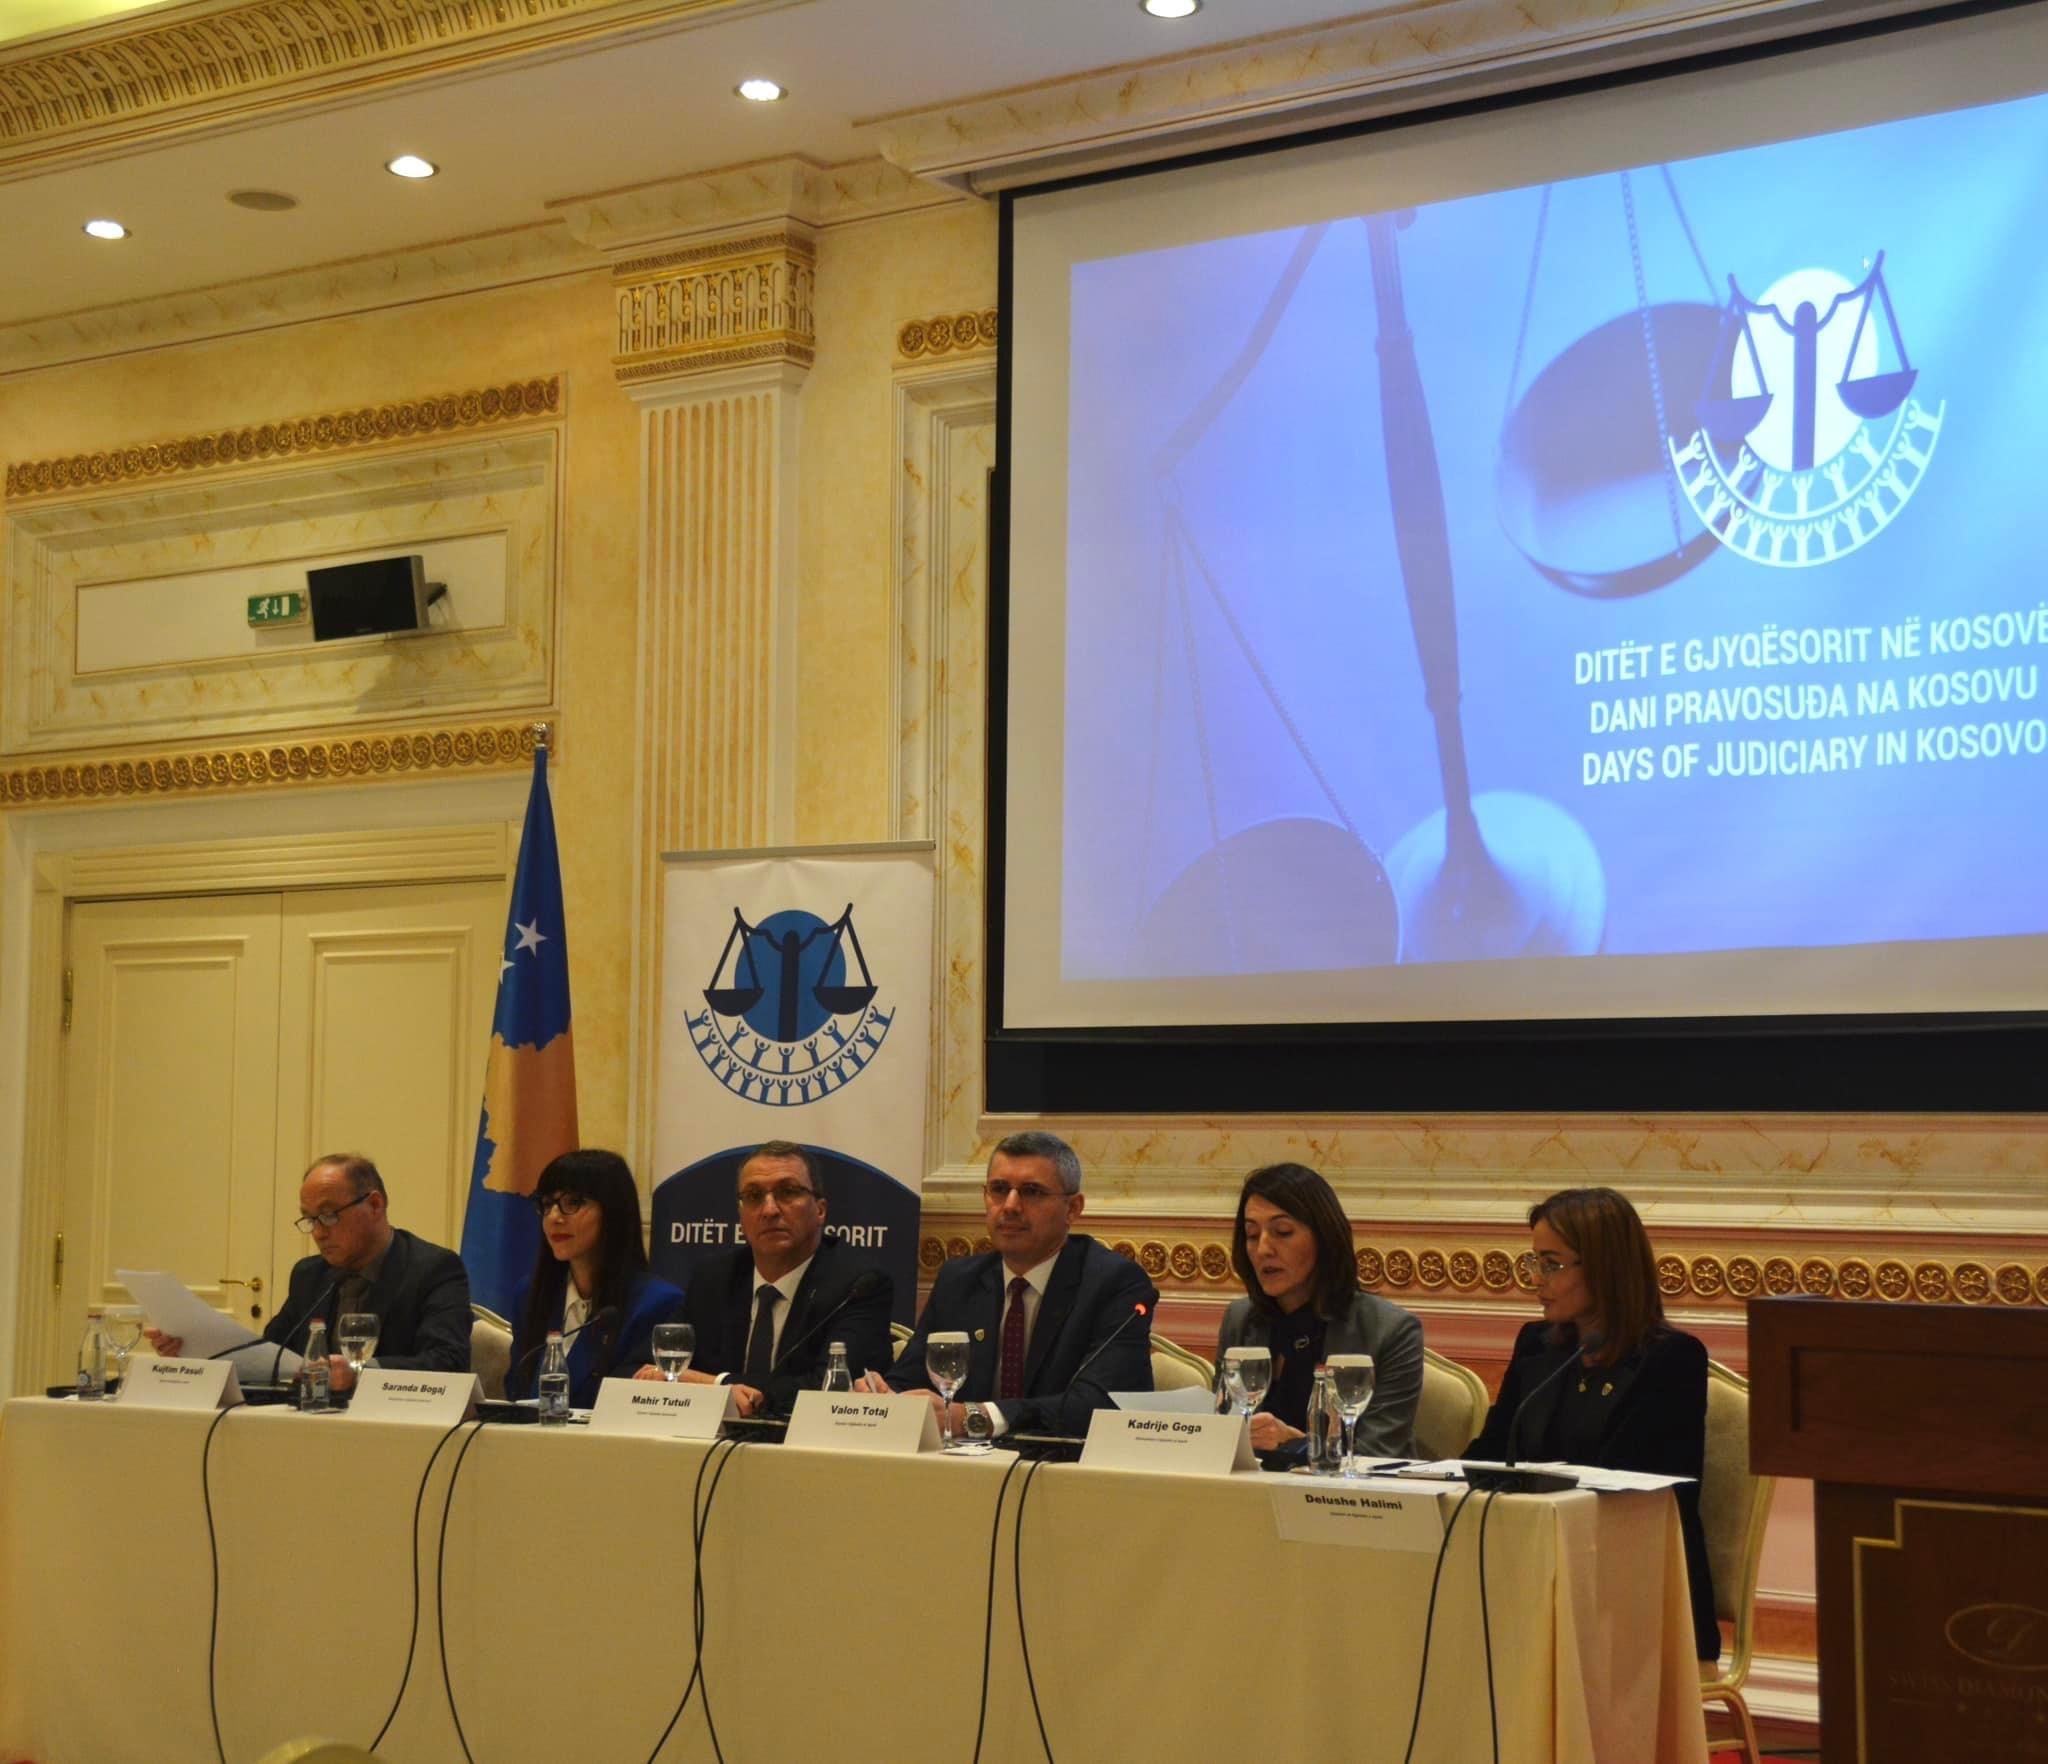 Në ditën e dytë të “Ditëve të Gjyqësorit”, Gjykata e Apelit e Kosovës prezanton të gjeturat në praktikën gjyqësore për çështjet penale, civile dhe administrative